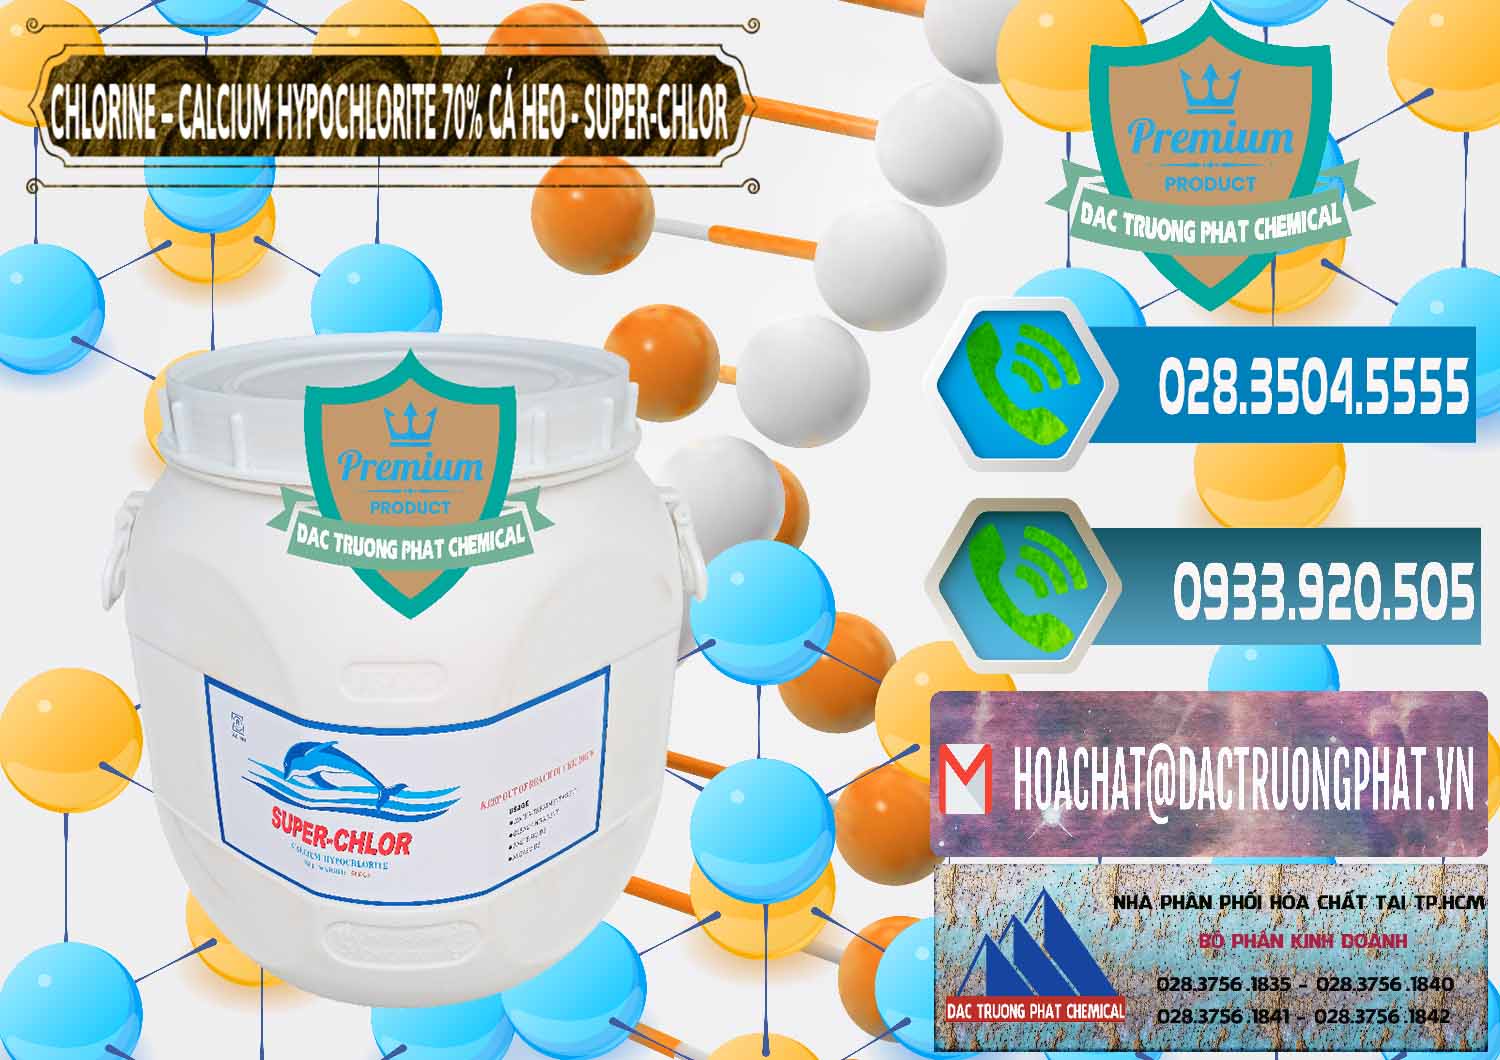 Cty bán _ phân phối Clorin - Chlorine Cá Heo 70% Super Chlor Trung Quốc China - 0058 - Nhà cung cấp - phân phối hóa chất tại TP.HCM - congtyhoachat.net